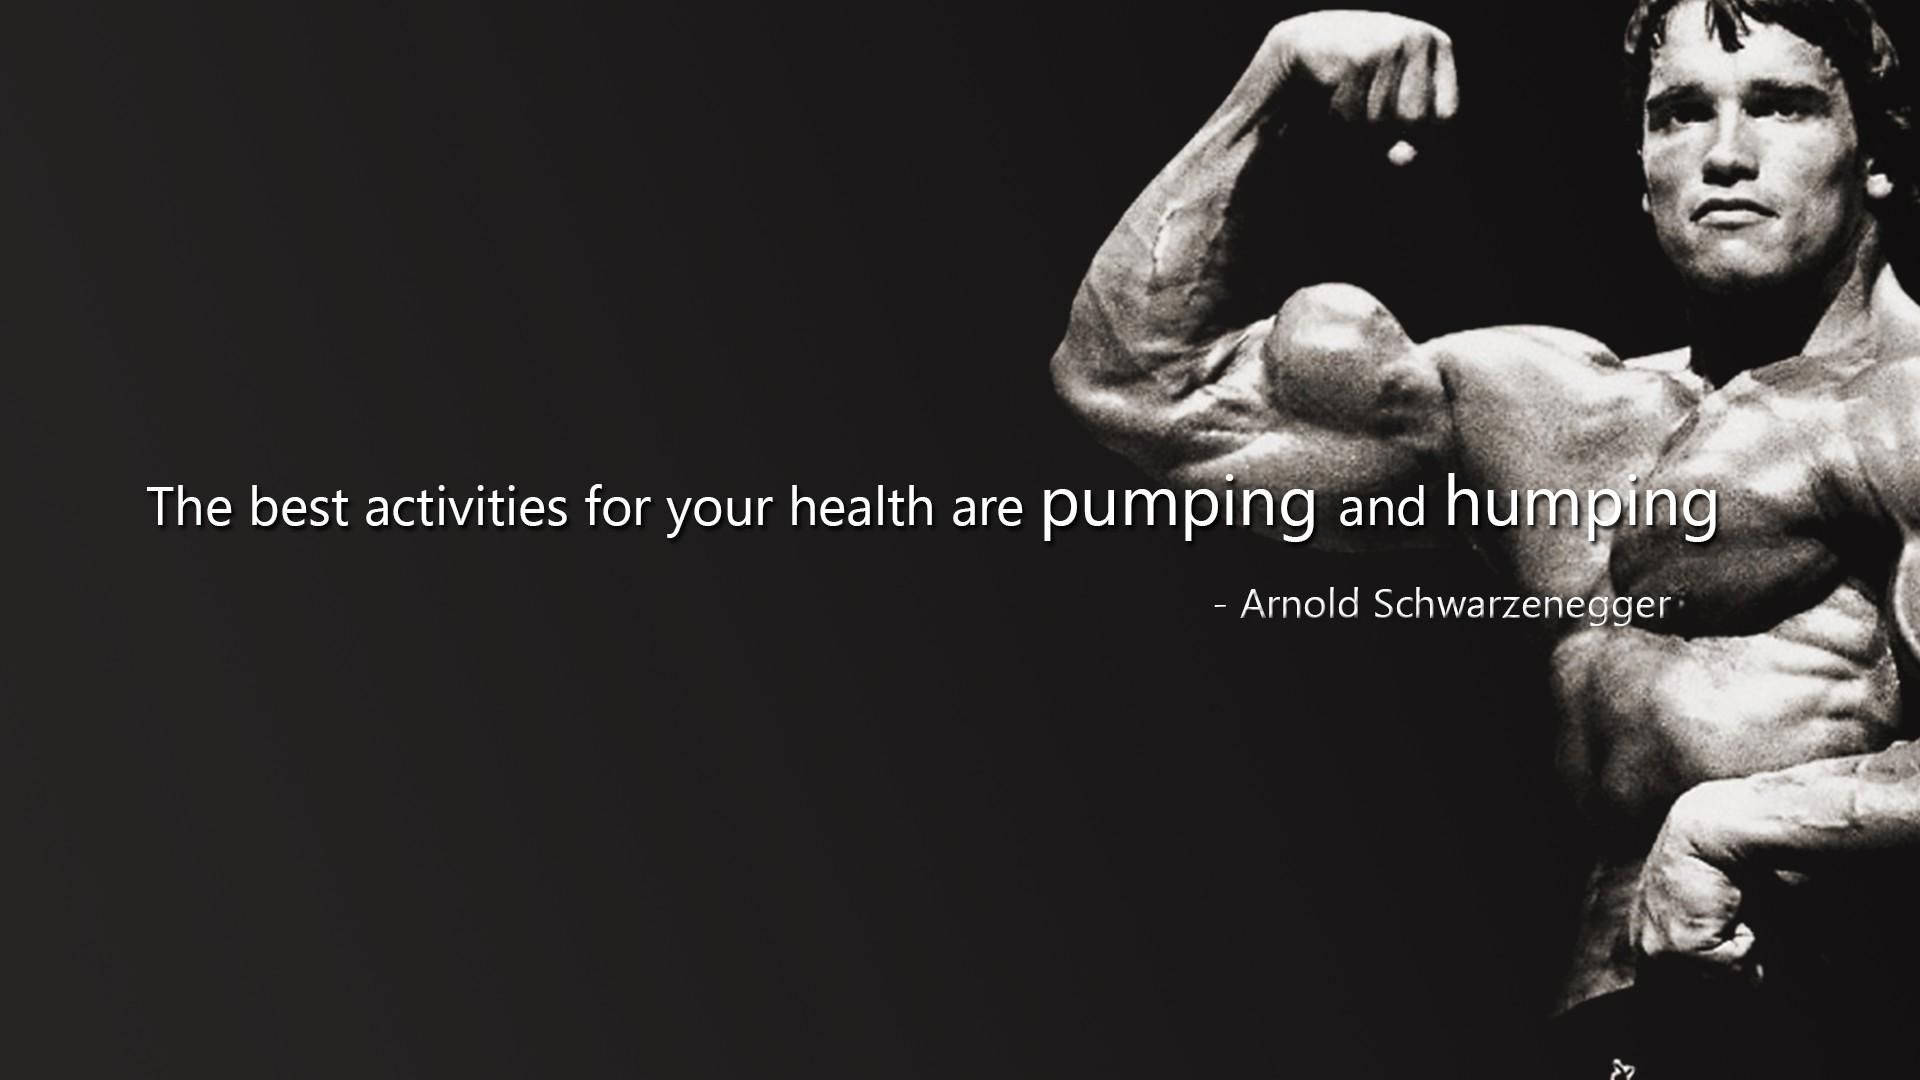 Arnold Schwarzenegger Health Quote Background